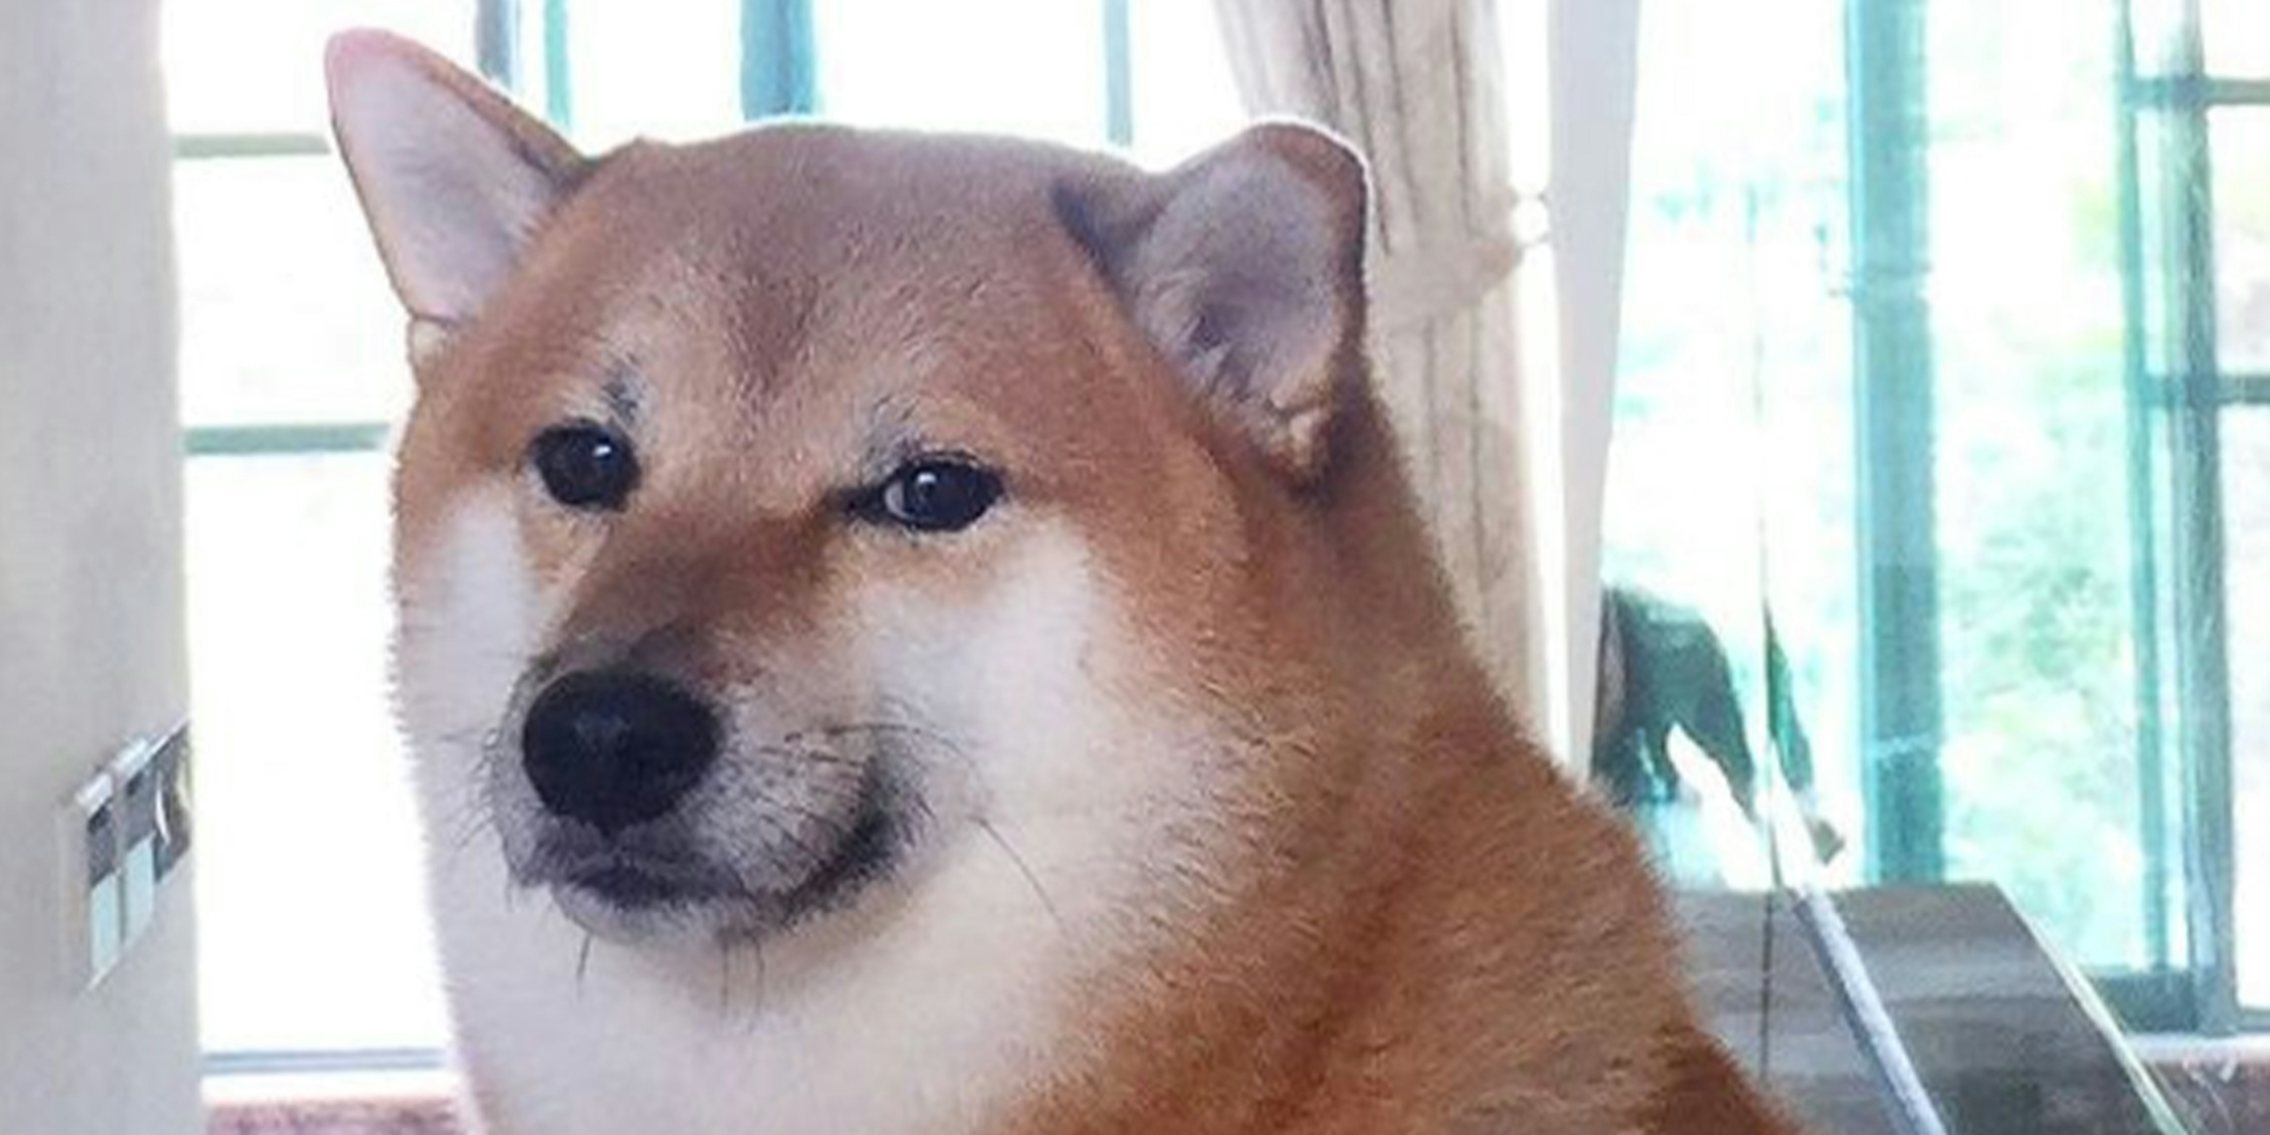 Famous meme dog Cheems